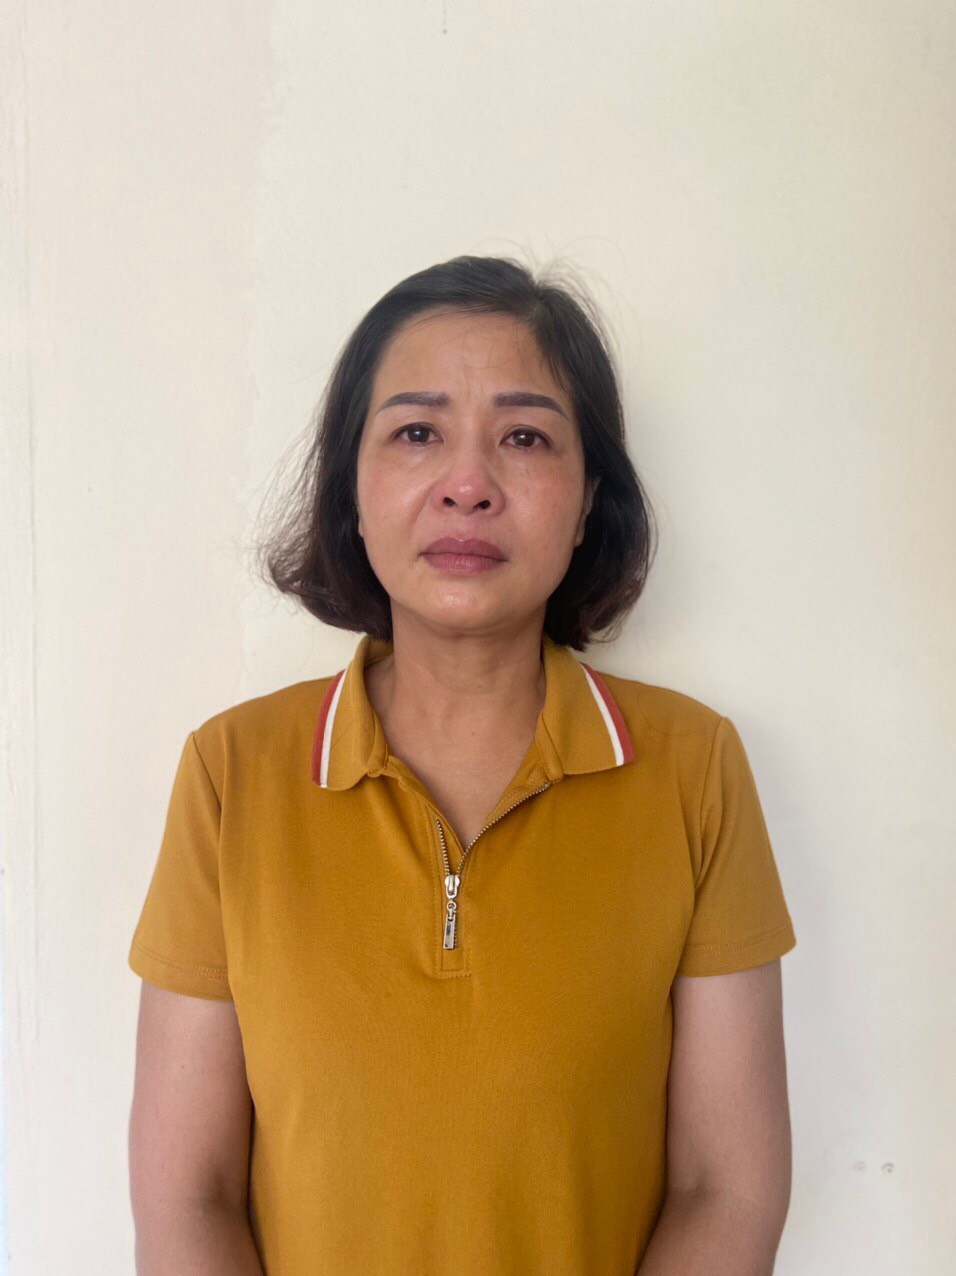 Bà Phạm Thị Hằng (nguyên Giám đốc Sở Giáo dục và Đào tạo tỉnh Thanh Hóa) - hiện là Phó trưởng ban Ban Tuyên giáo Tỉnh ủy Thanh Hoá.